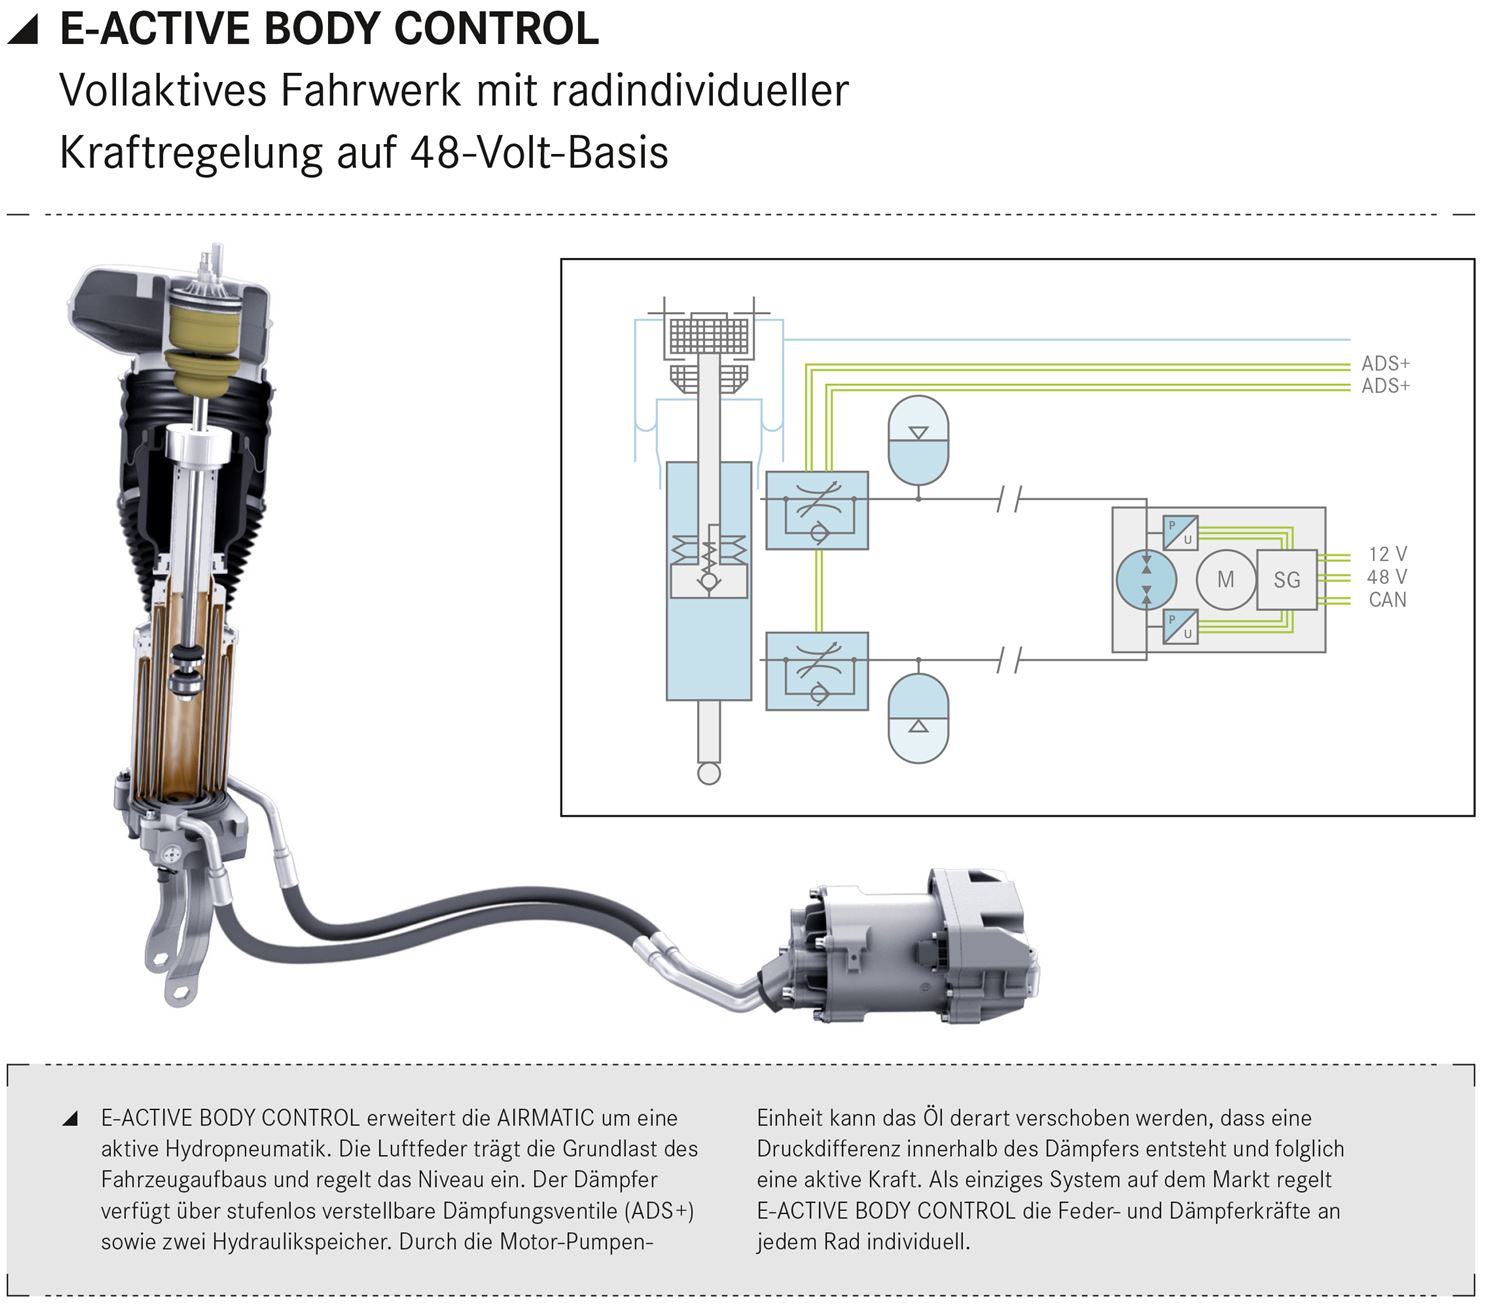 In den USA entfällt beim GLE das E-Active Body Control Fahrwerk - JESMB